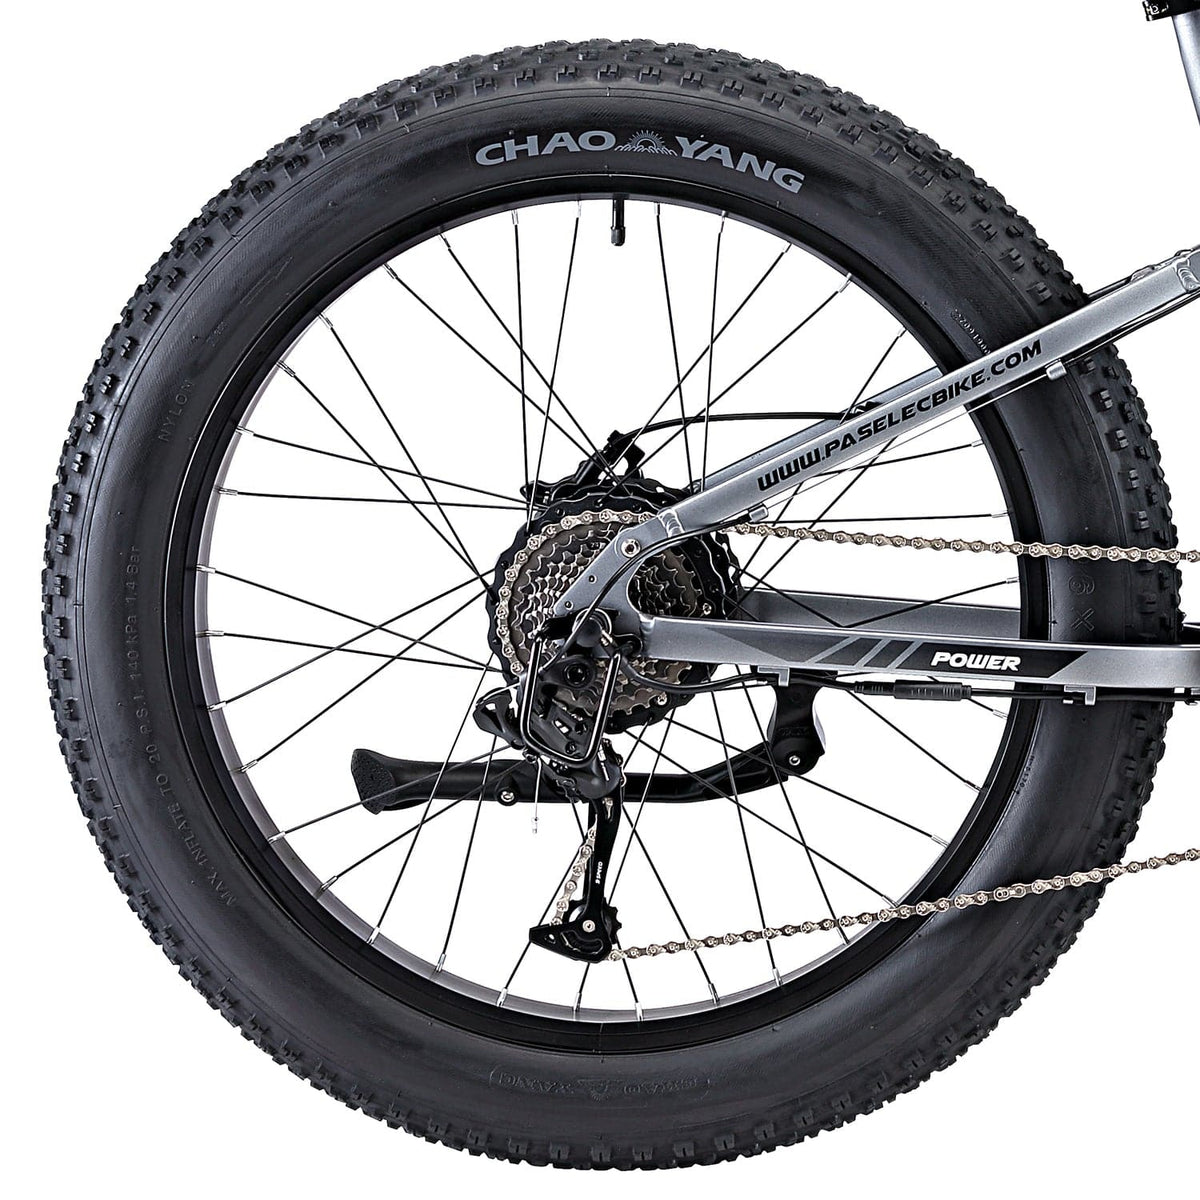 GS9plus Electric Bike Rear Wheel Set